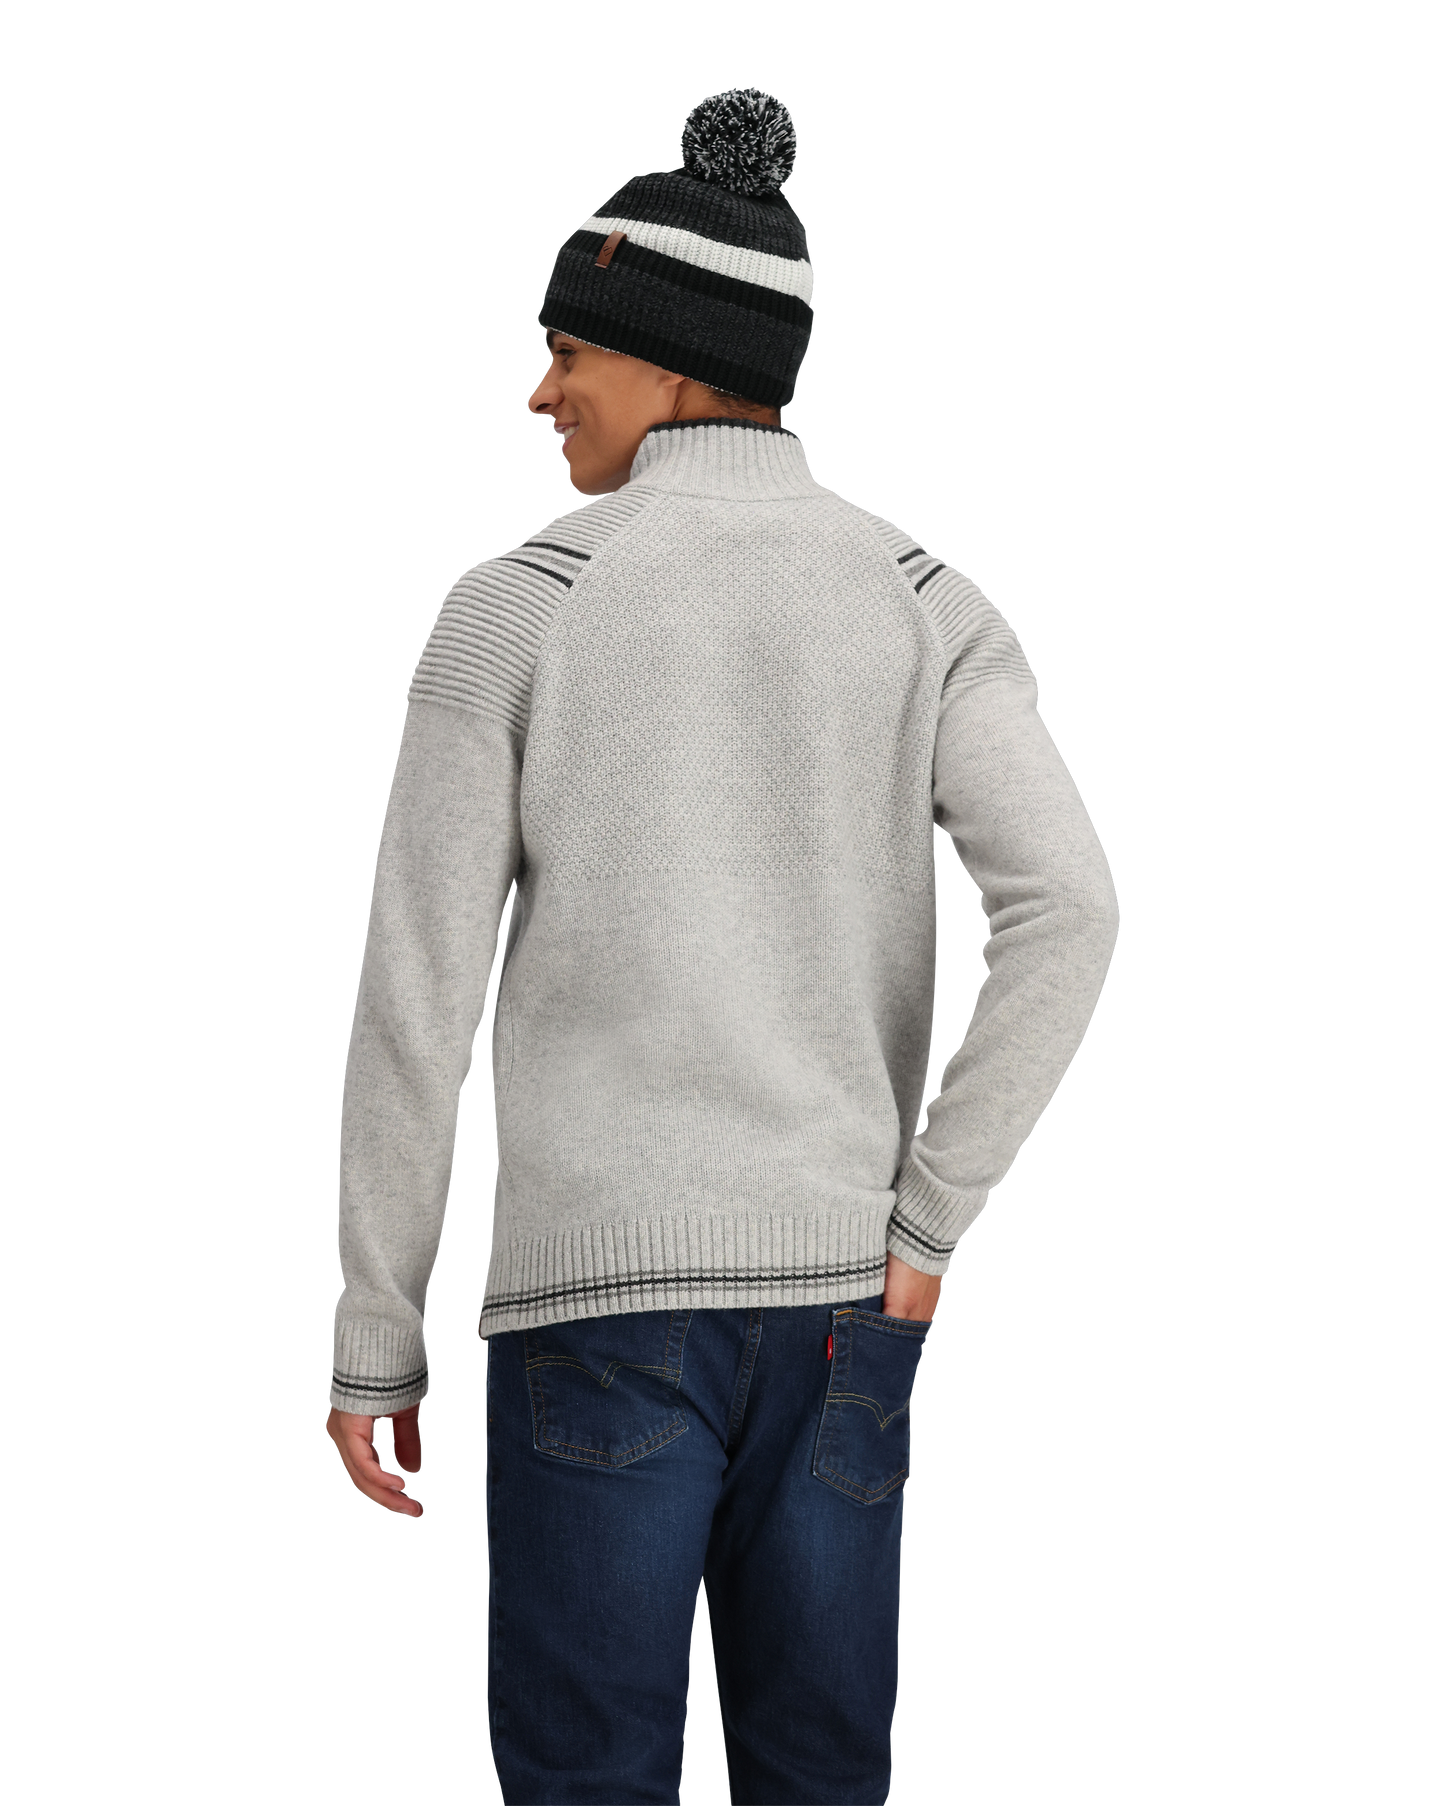 Obermeyer Gambel 1/2 Zip Sweater - Men's